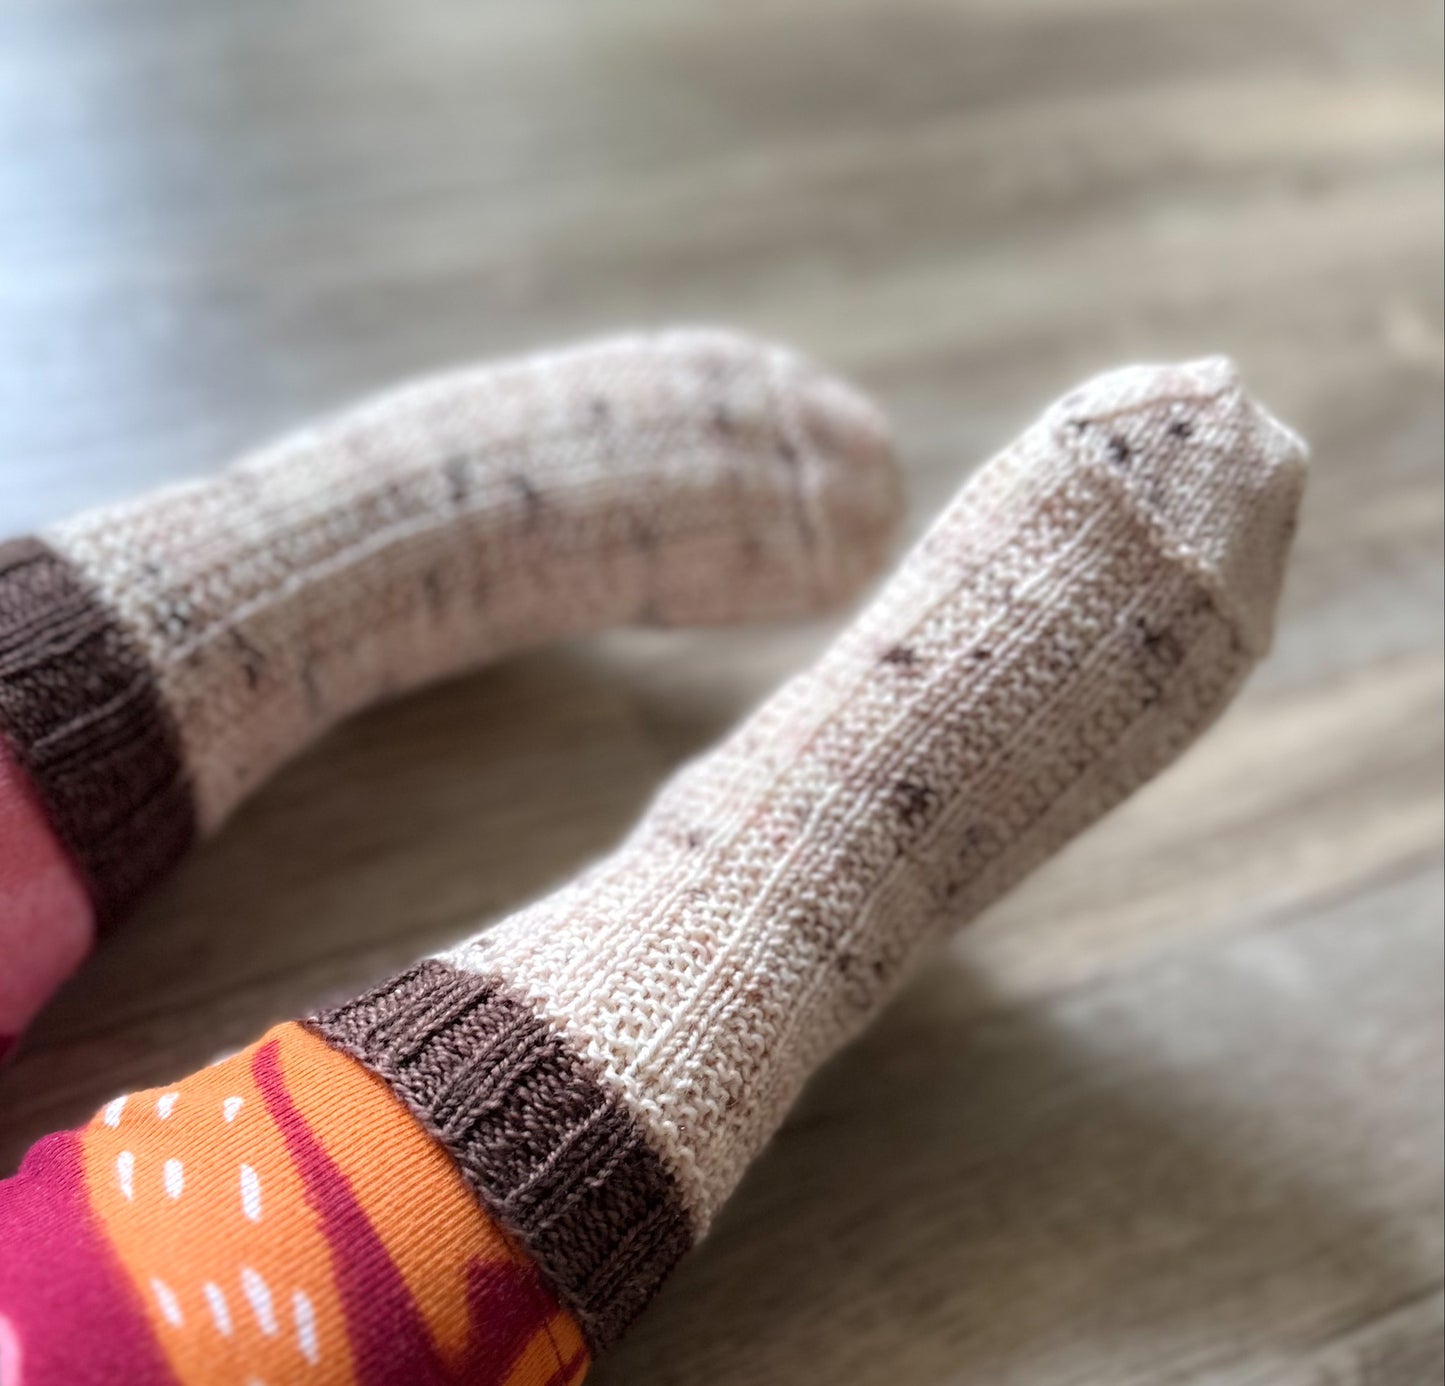 Moose Tracks Socks (Part of Vanilla Sundae Sock Set)